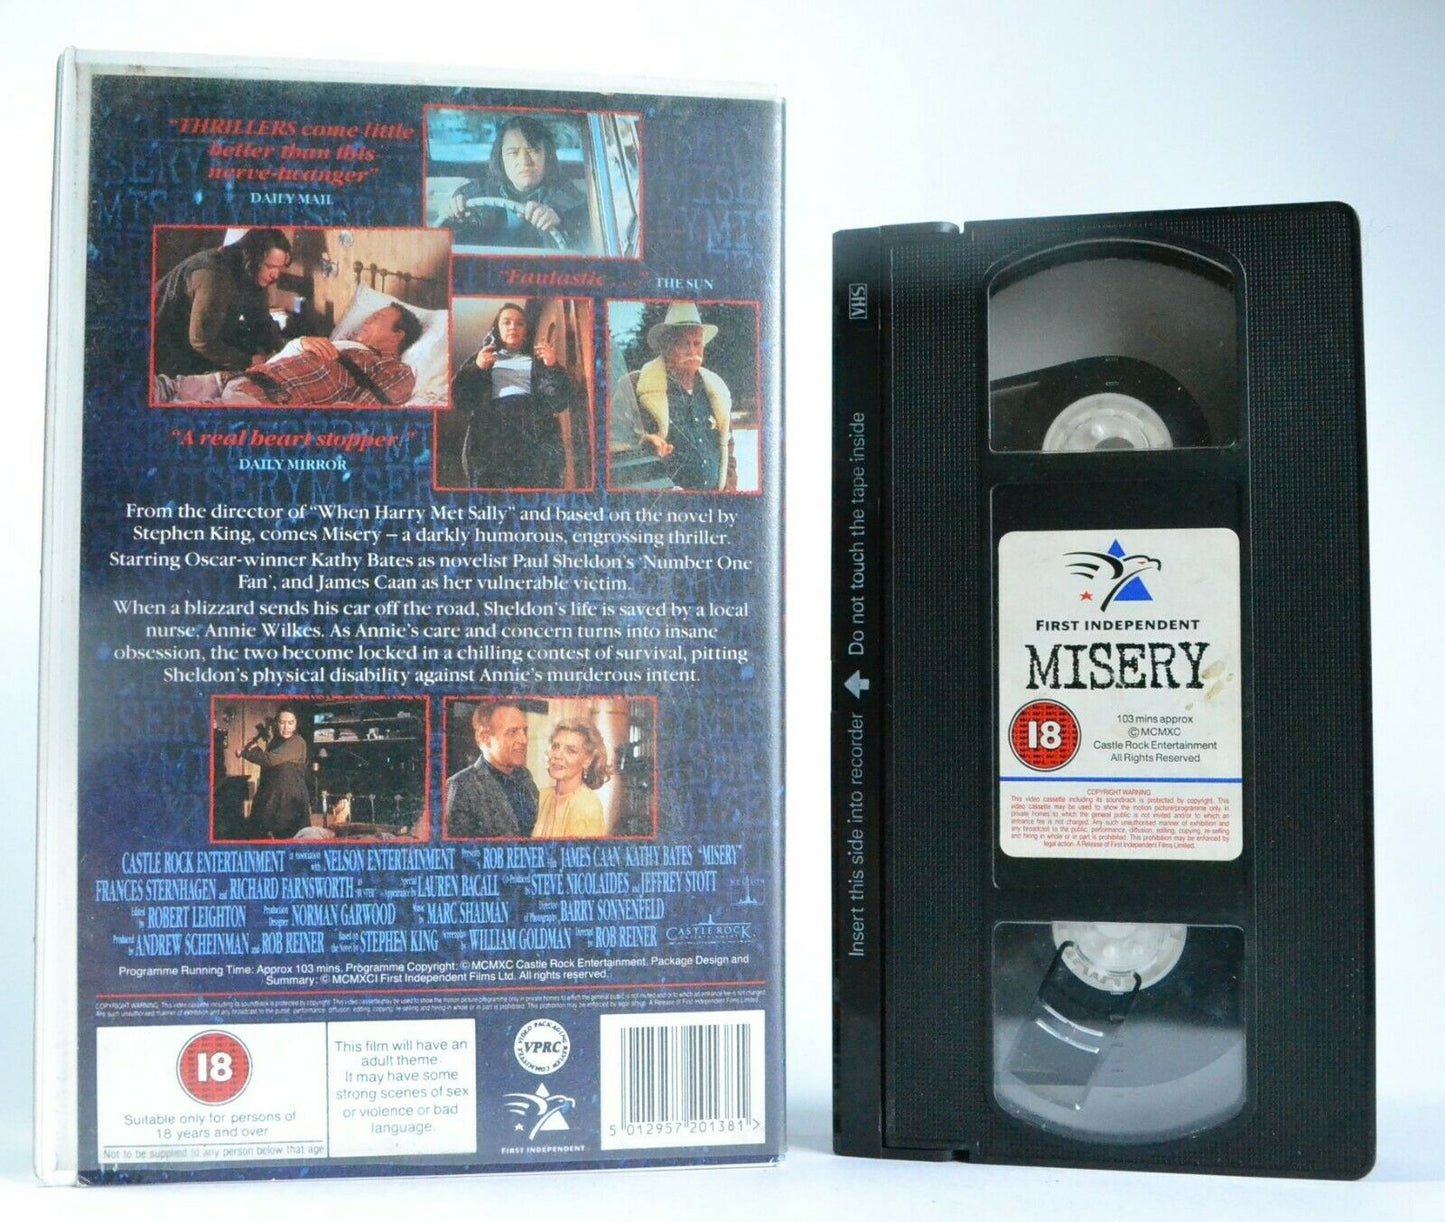 Misery: Based On S.King Novel - Psychological Thriller - J.Caan/K.Bates - VHS-